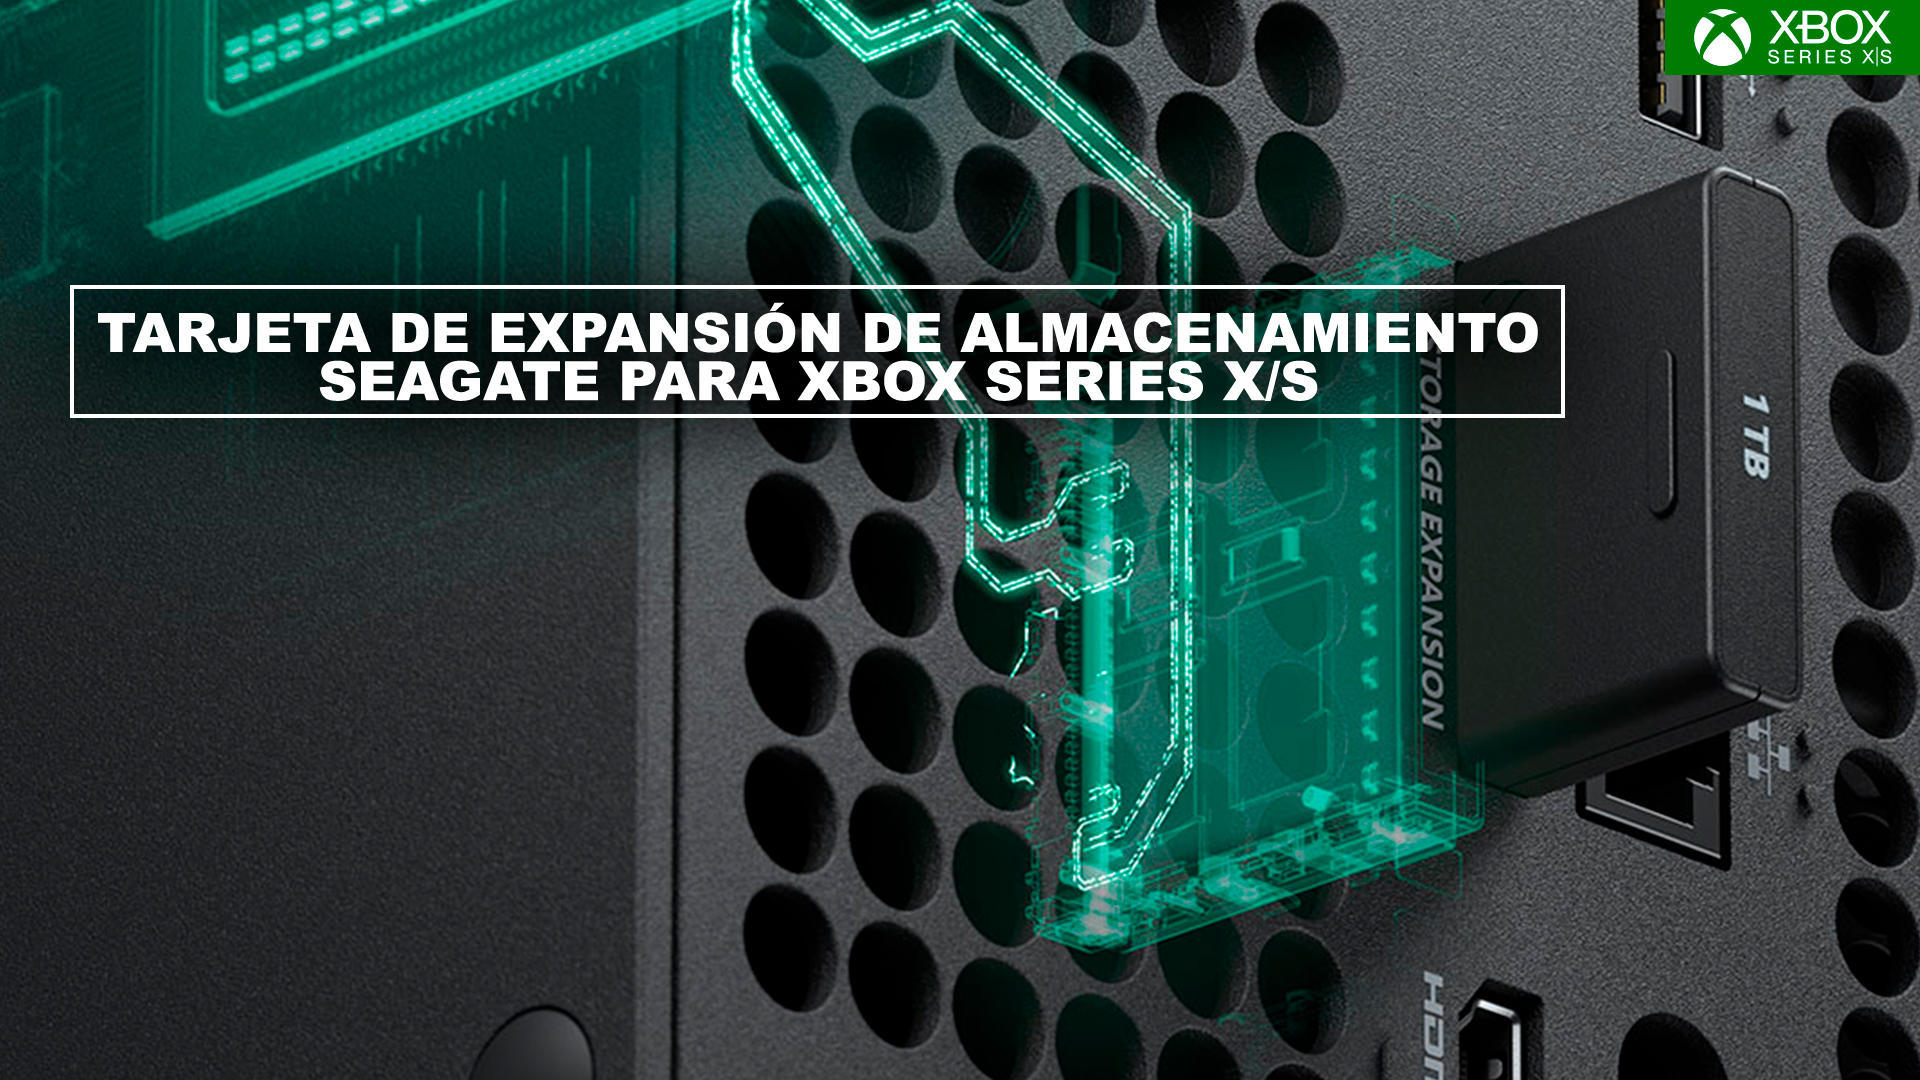 Anlisis Tarjeta de expansin de almacenamiento Seagate para Xbox Series X/S, merece la pena?